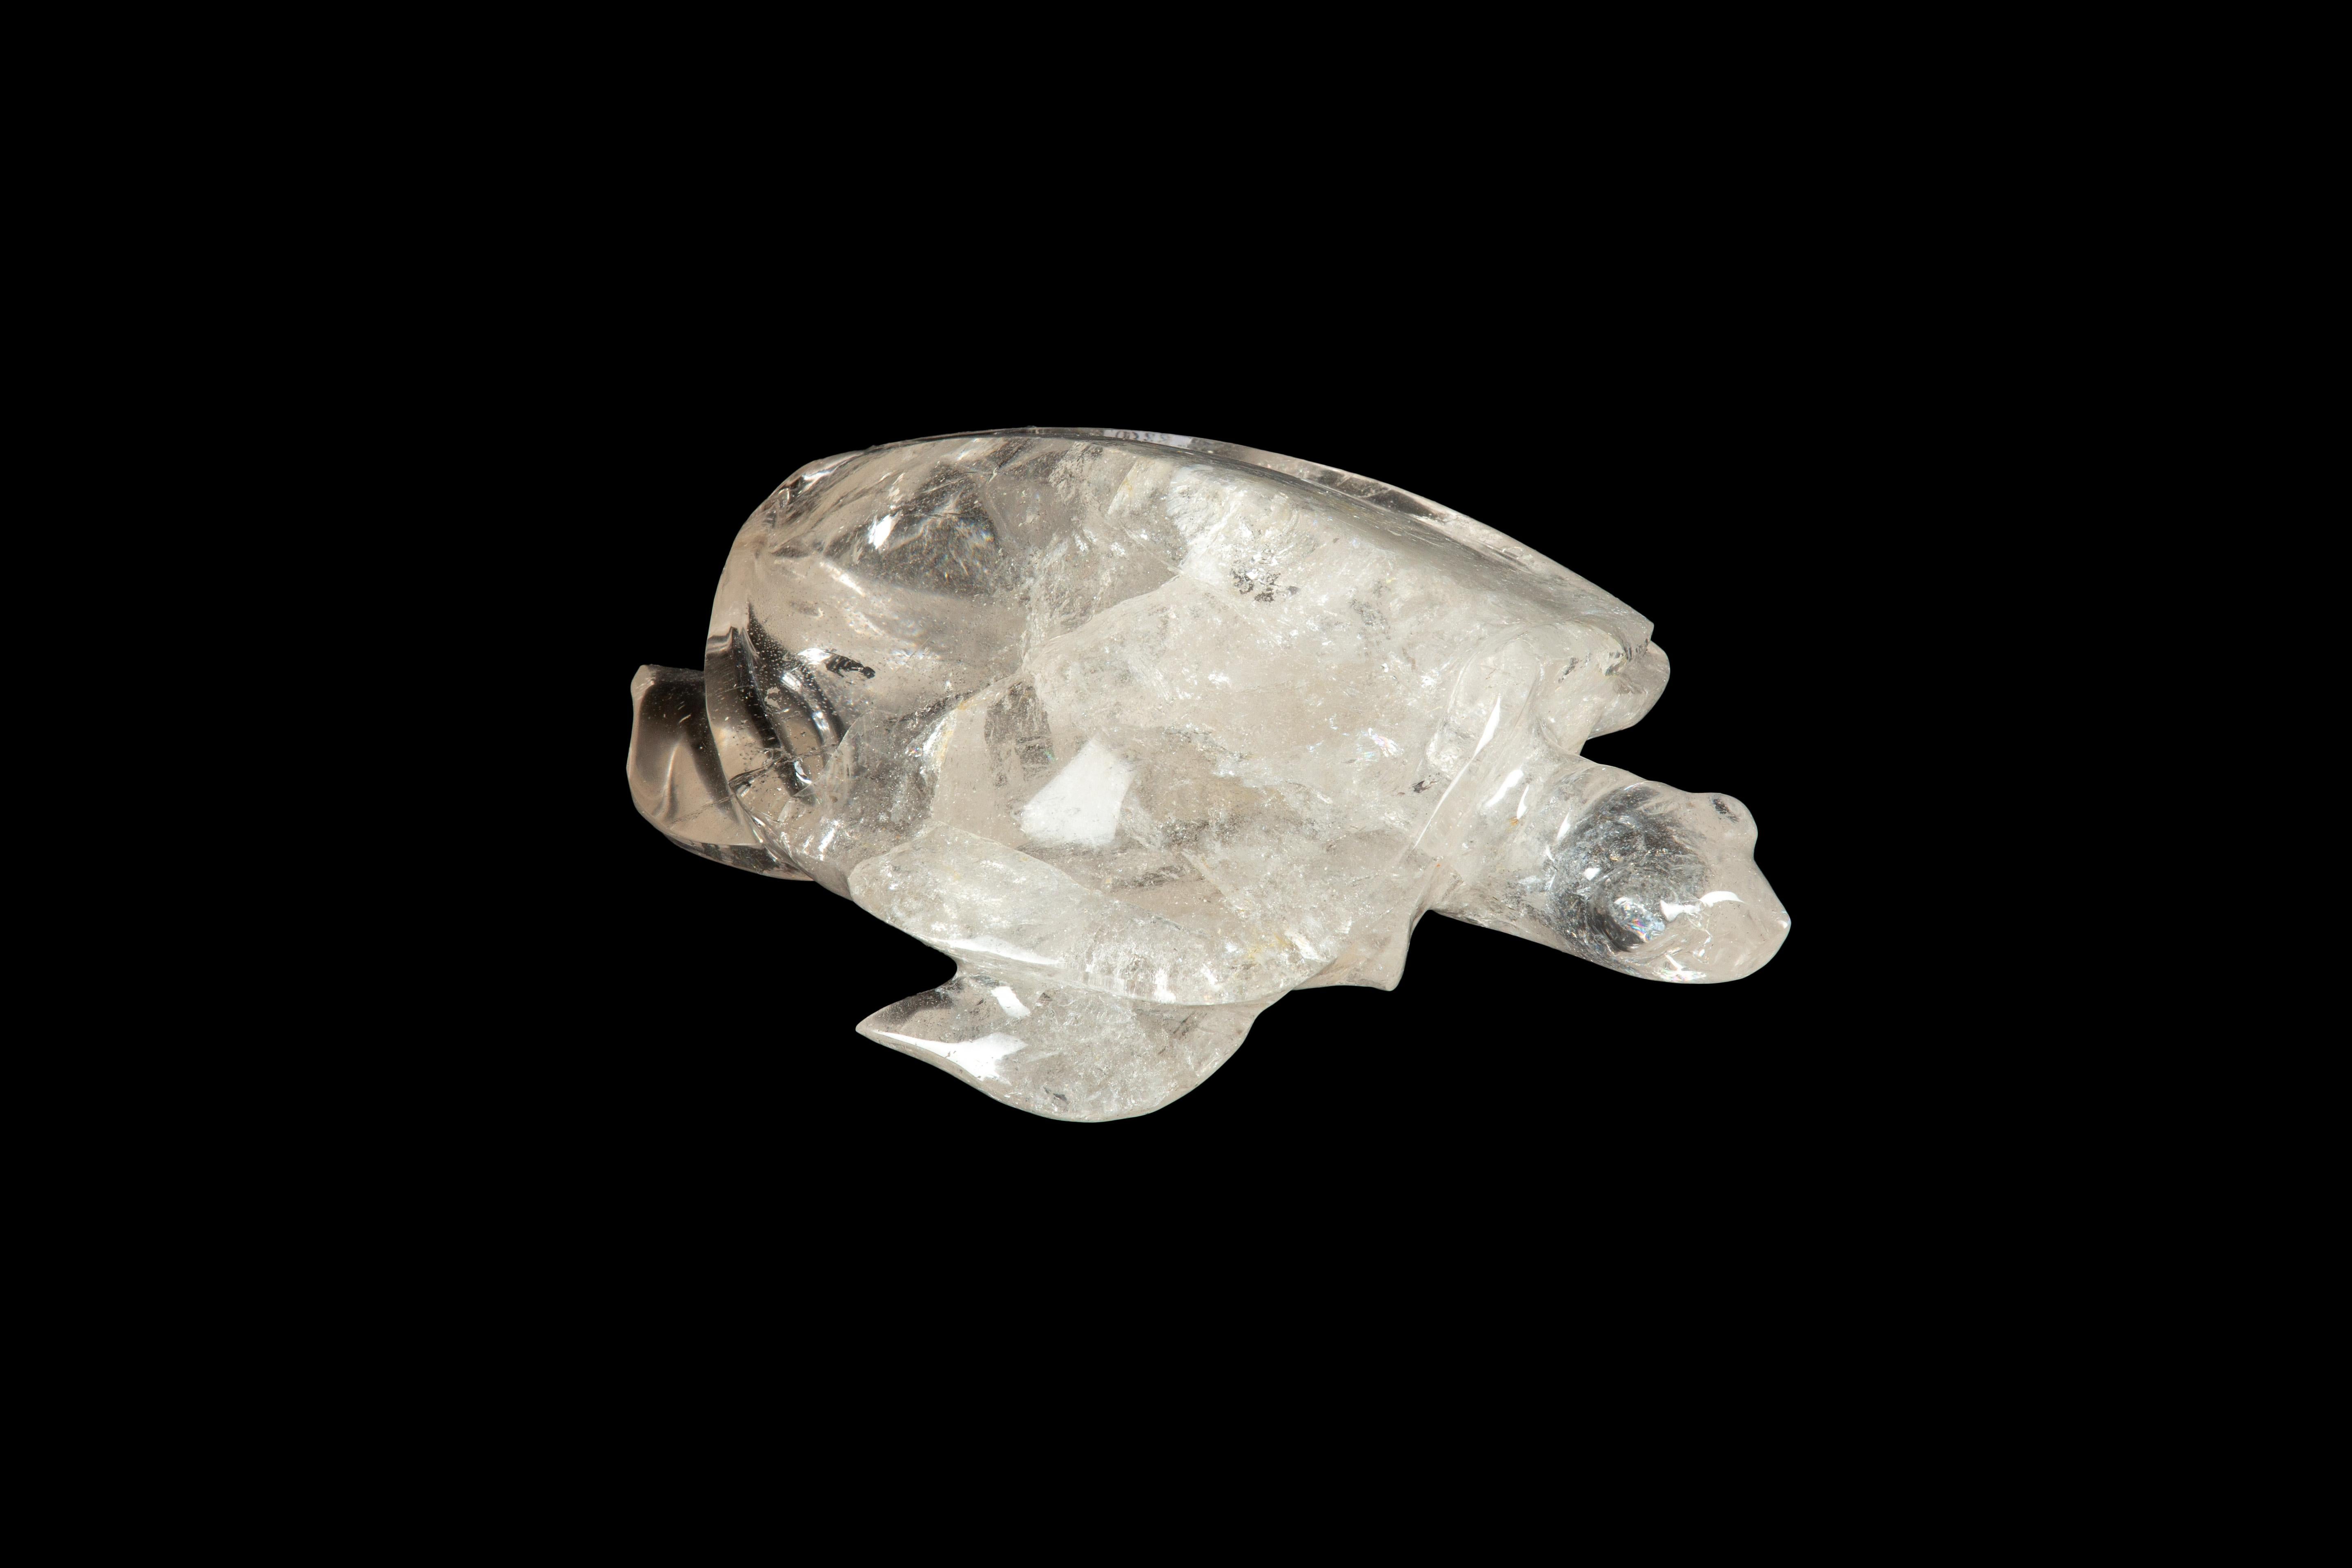 Diese große handgeschnitzte Schildkröte aus Bergkristall ist ein atemberaubendes Stück Handwerkskunst, das jeden beeindrucken wird, der es sieht. Die Schildkröte ist aus hochwertigem Bergkristall, einer klaren und farblosen Quarzsorte, geschnitzt